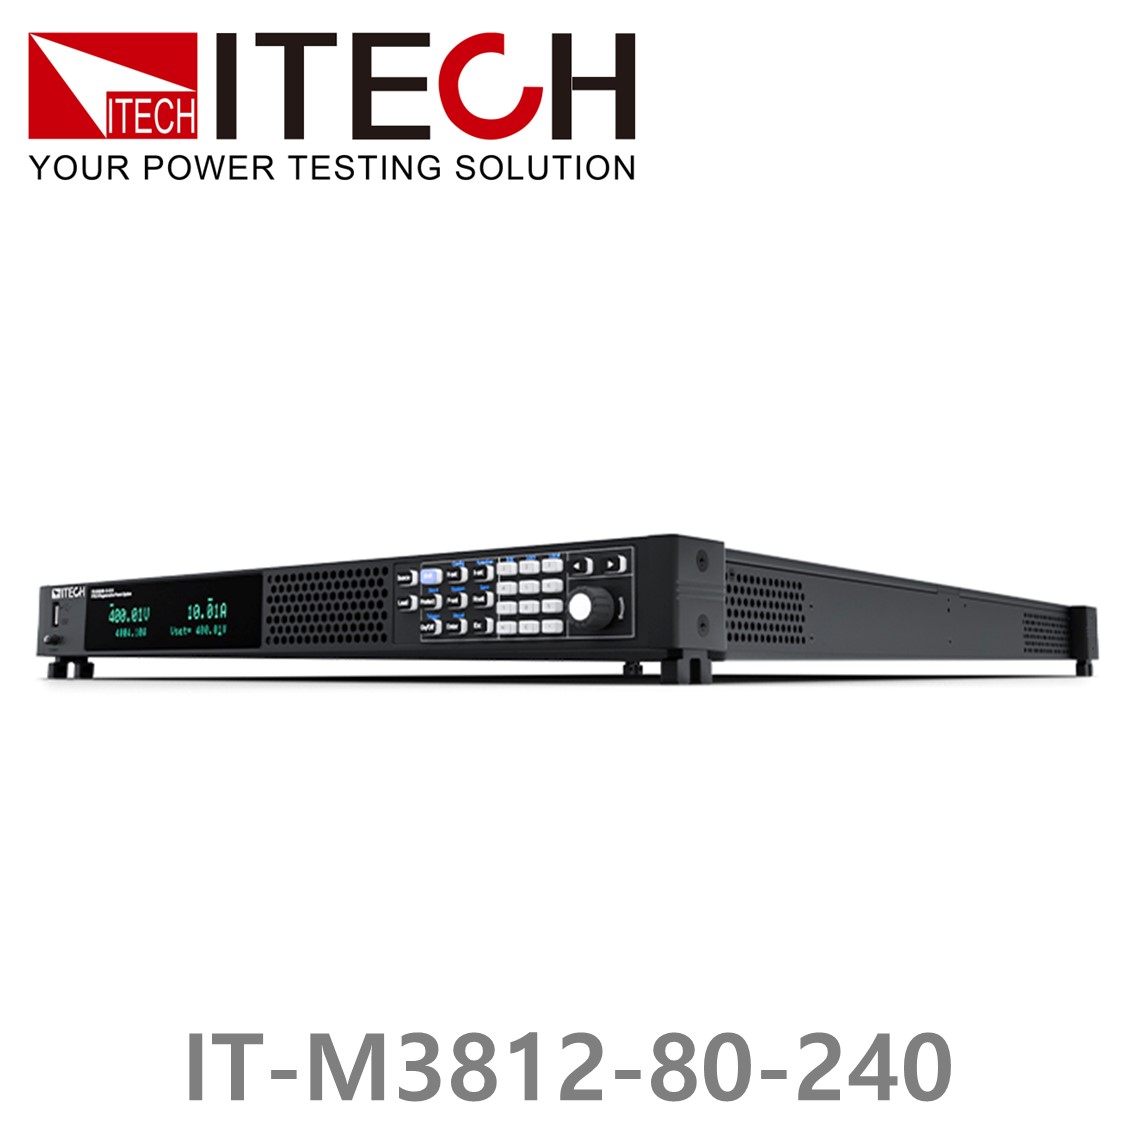 [ ITECH ] IT-M3812-80-240, 80V/240A/12000W DC 전자로드, DC전자부하기